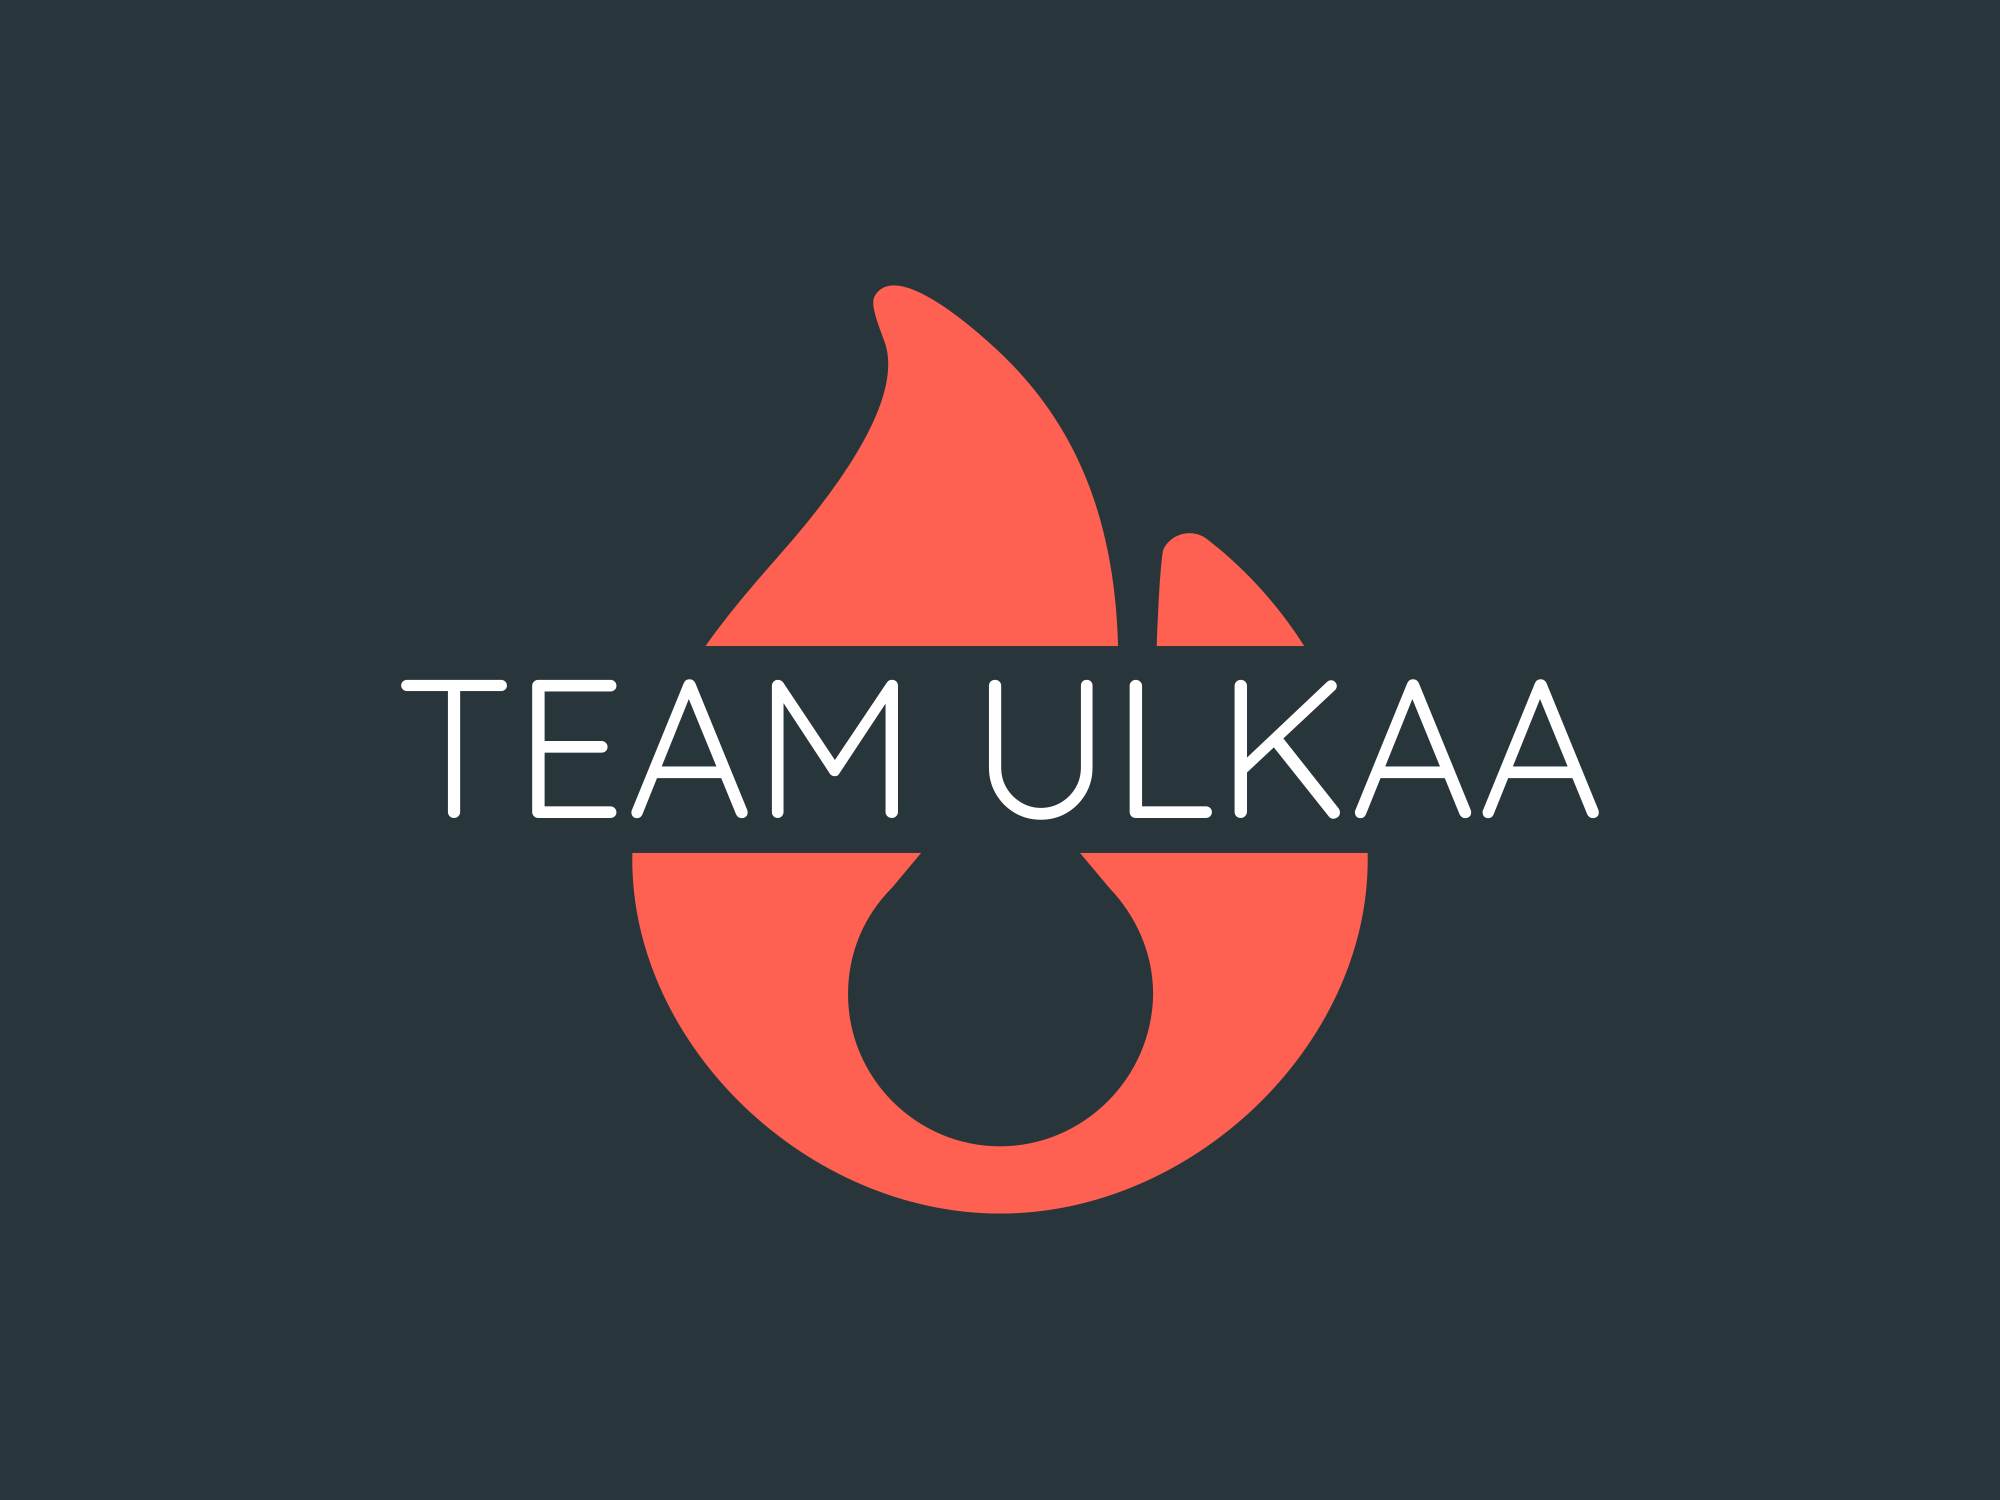 Team Ulkaa